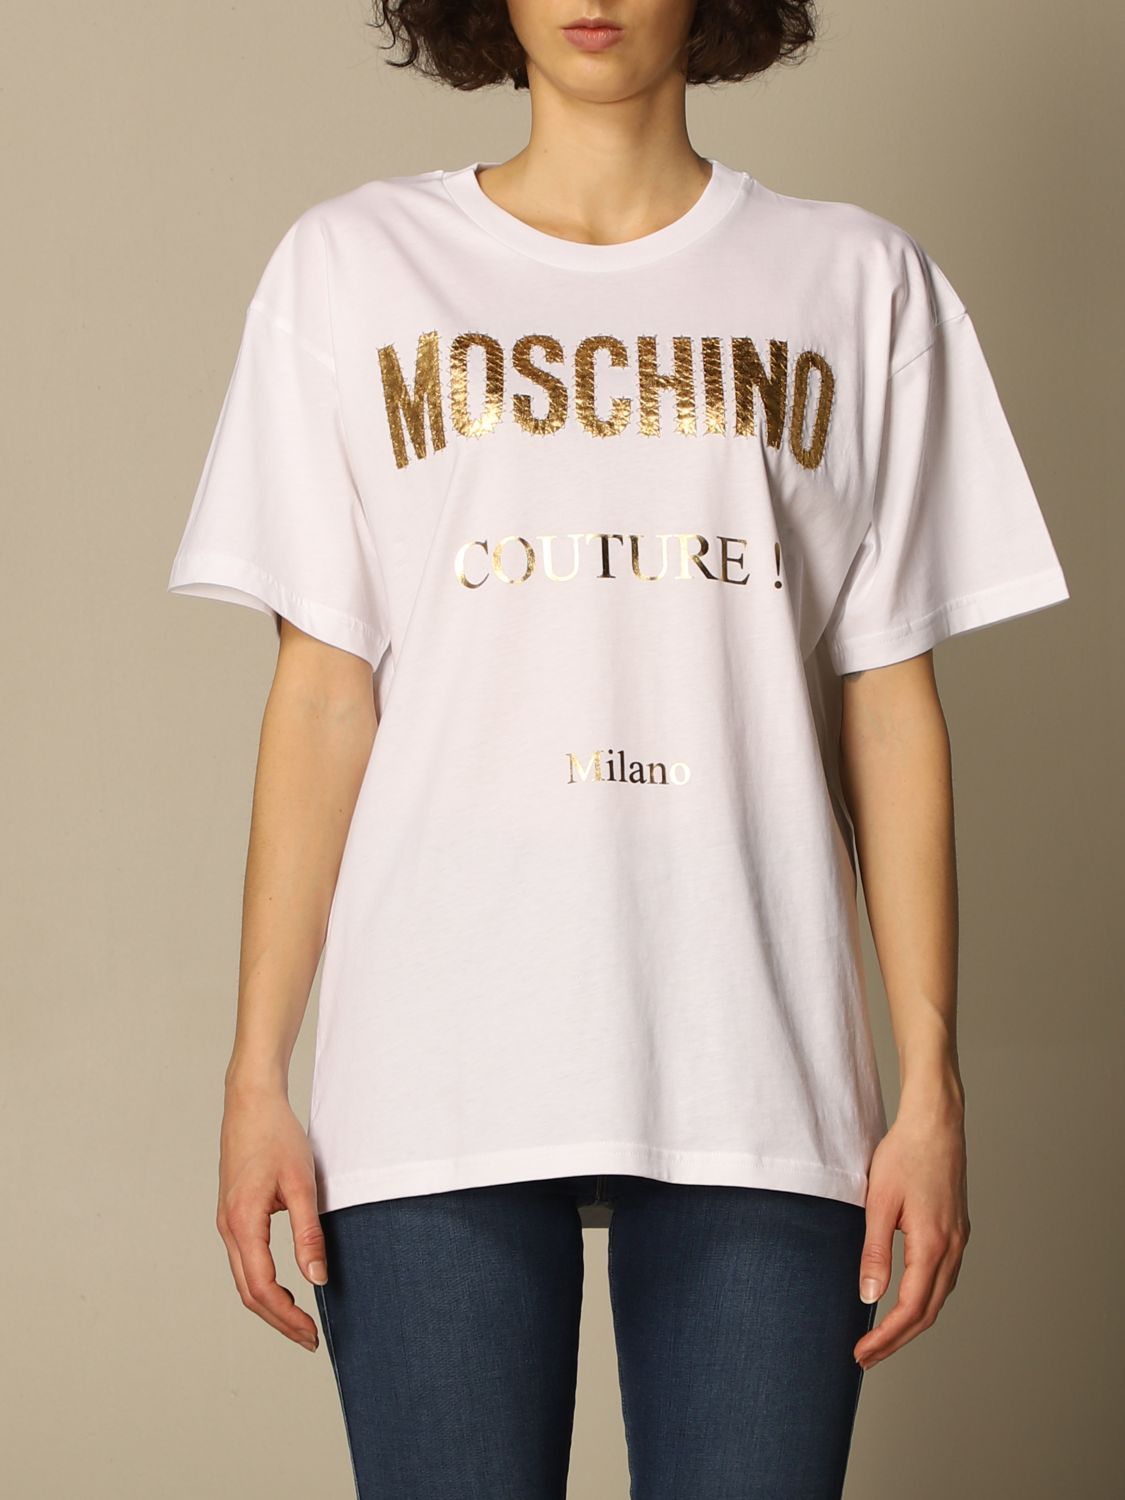 Moschino Couture 0713 0440 Giglio RU